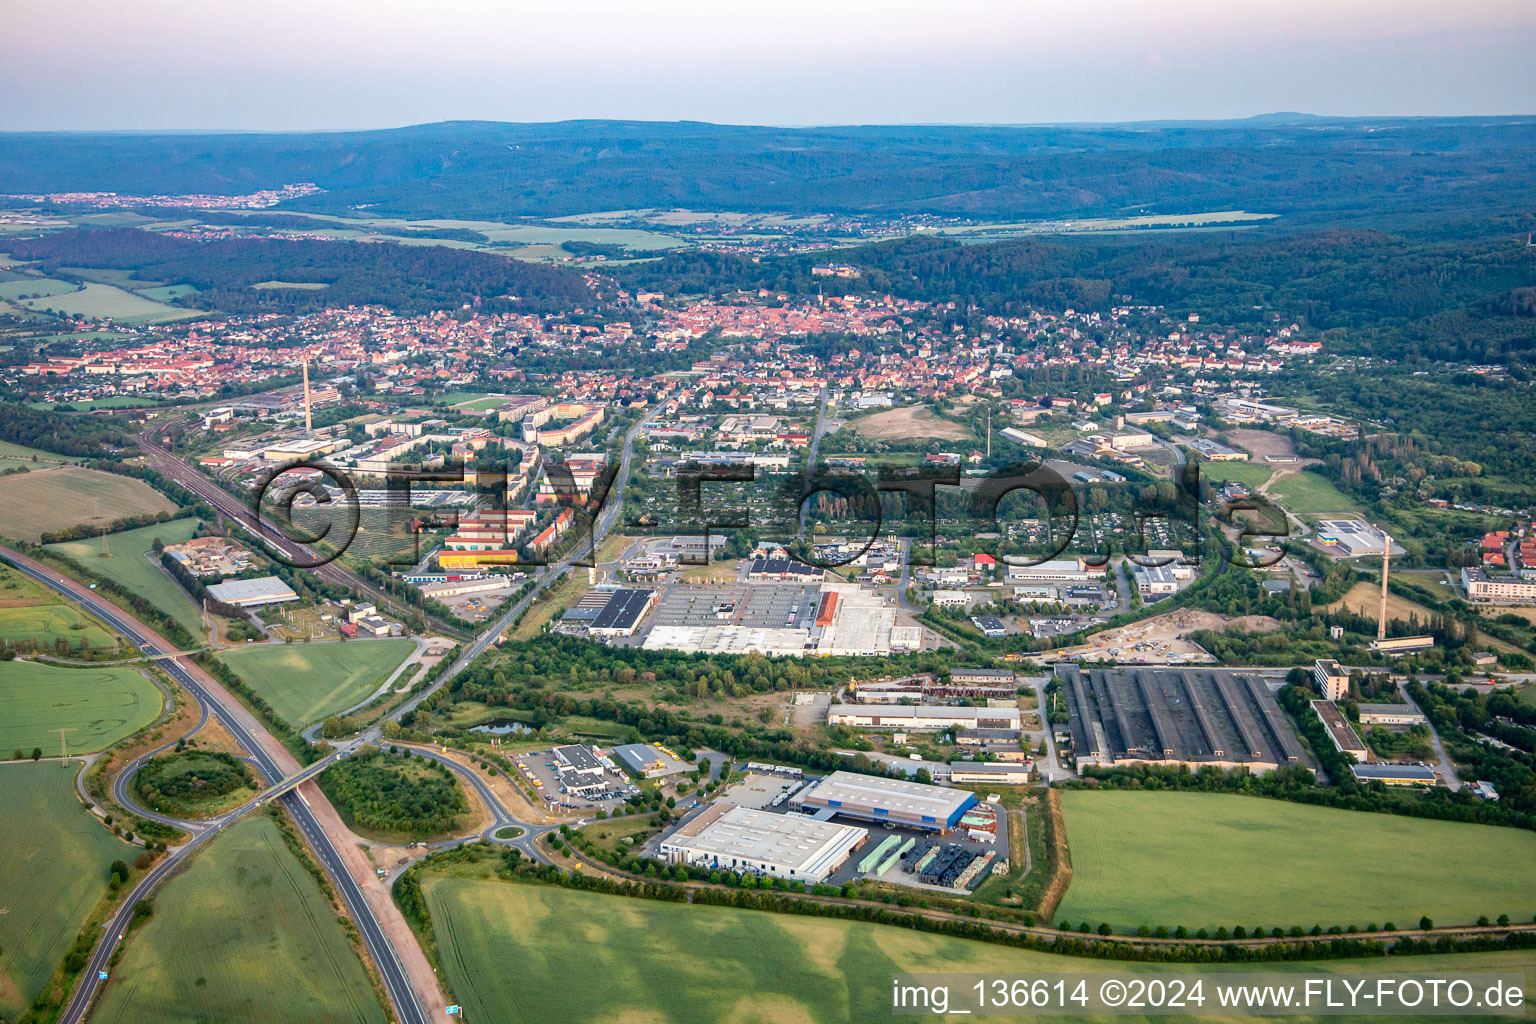 Vue aérienne de De l'ouest à Blankenburg dans le département Saxe-Anhalt, Allemagne